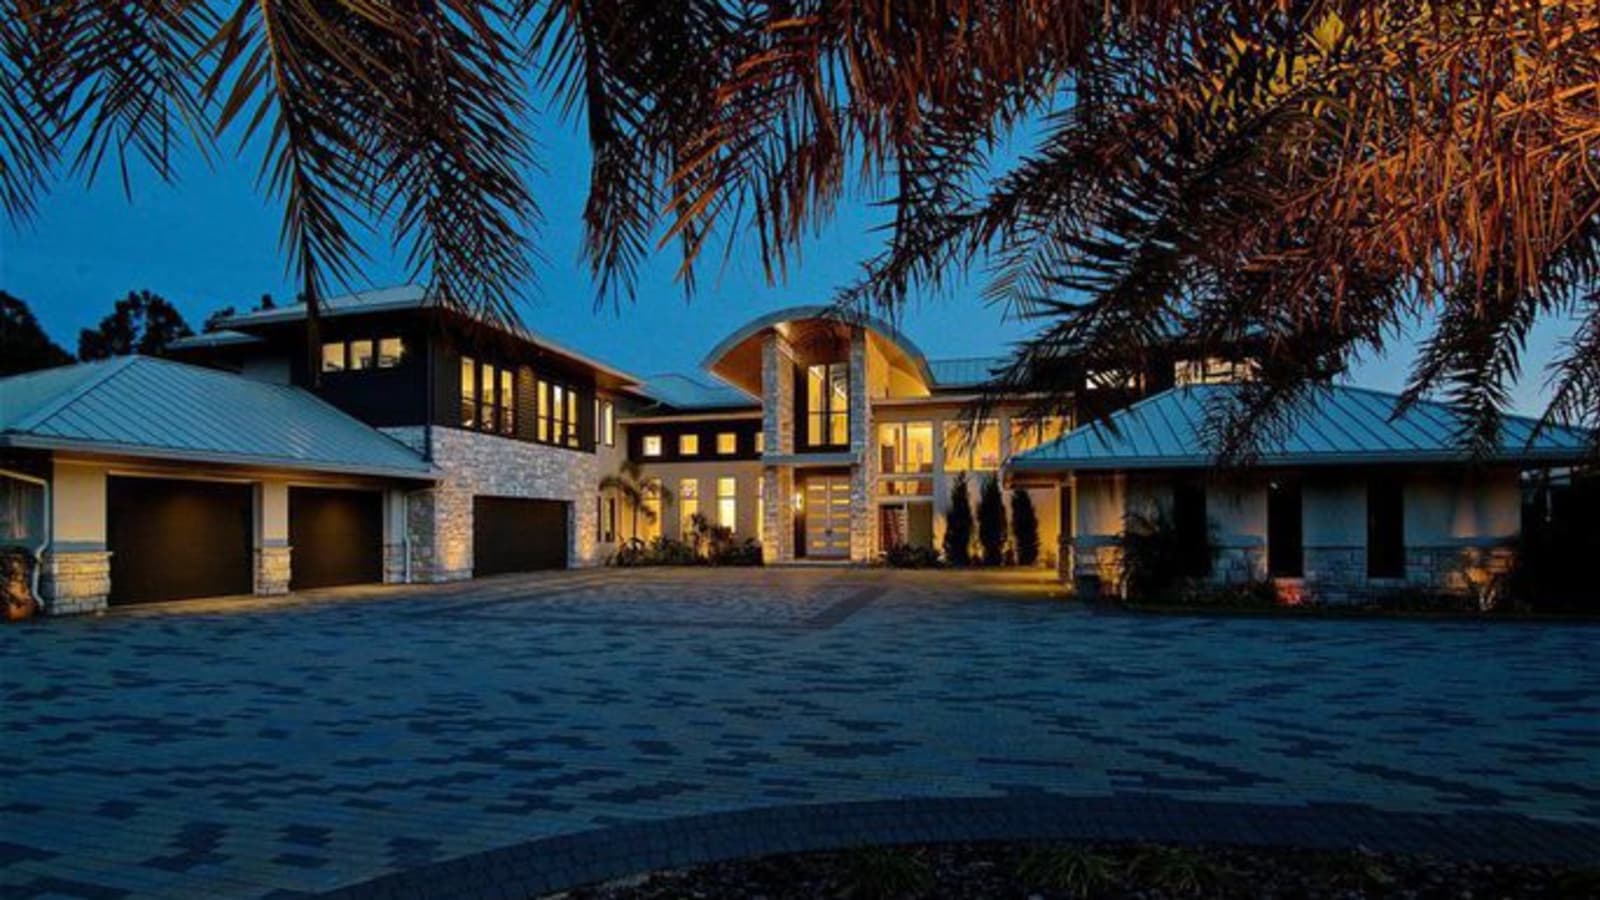 Casa de Tim Tebow em Jacksonville, FL, USA